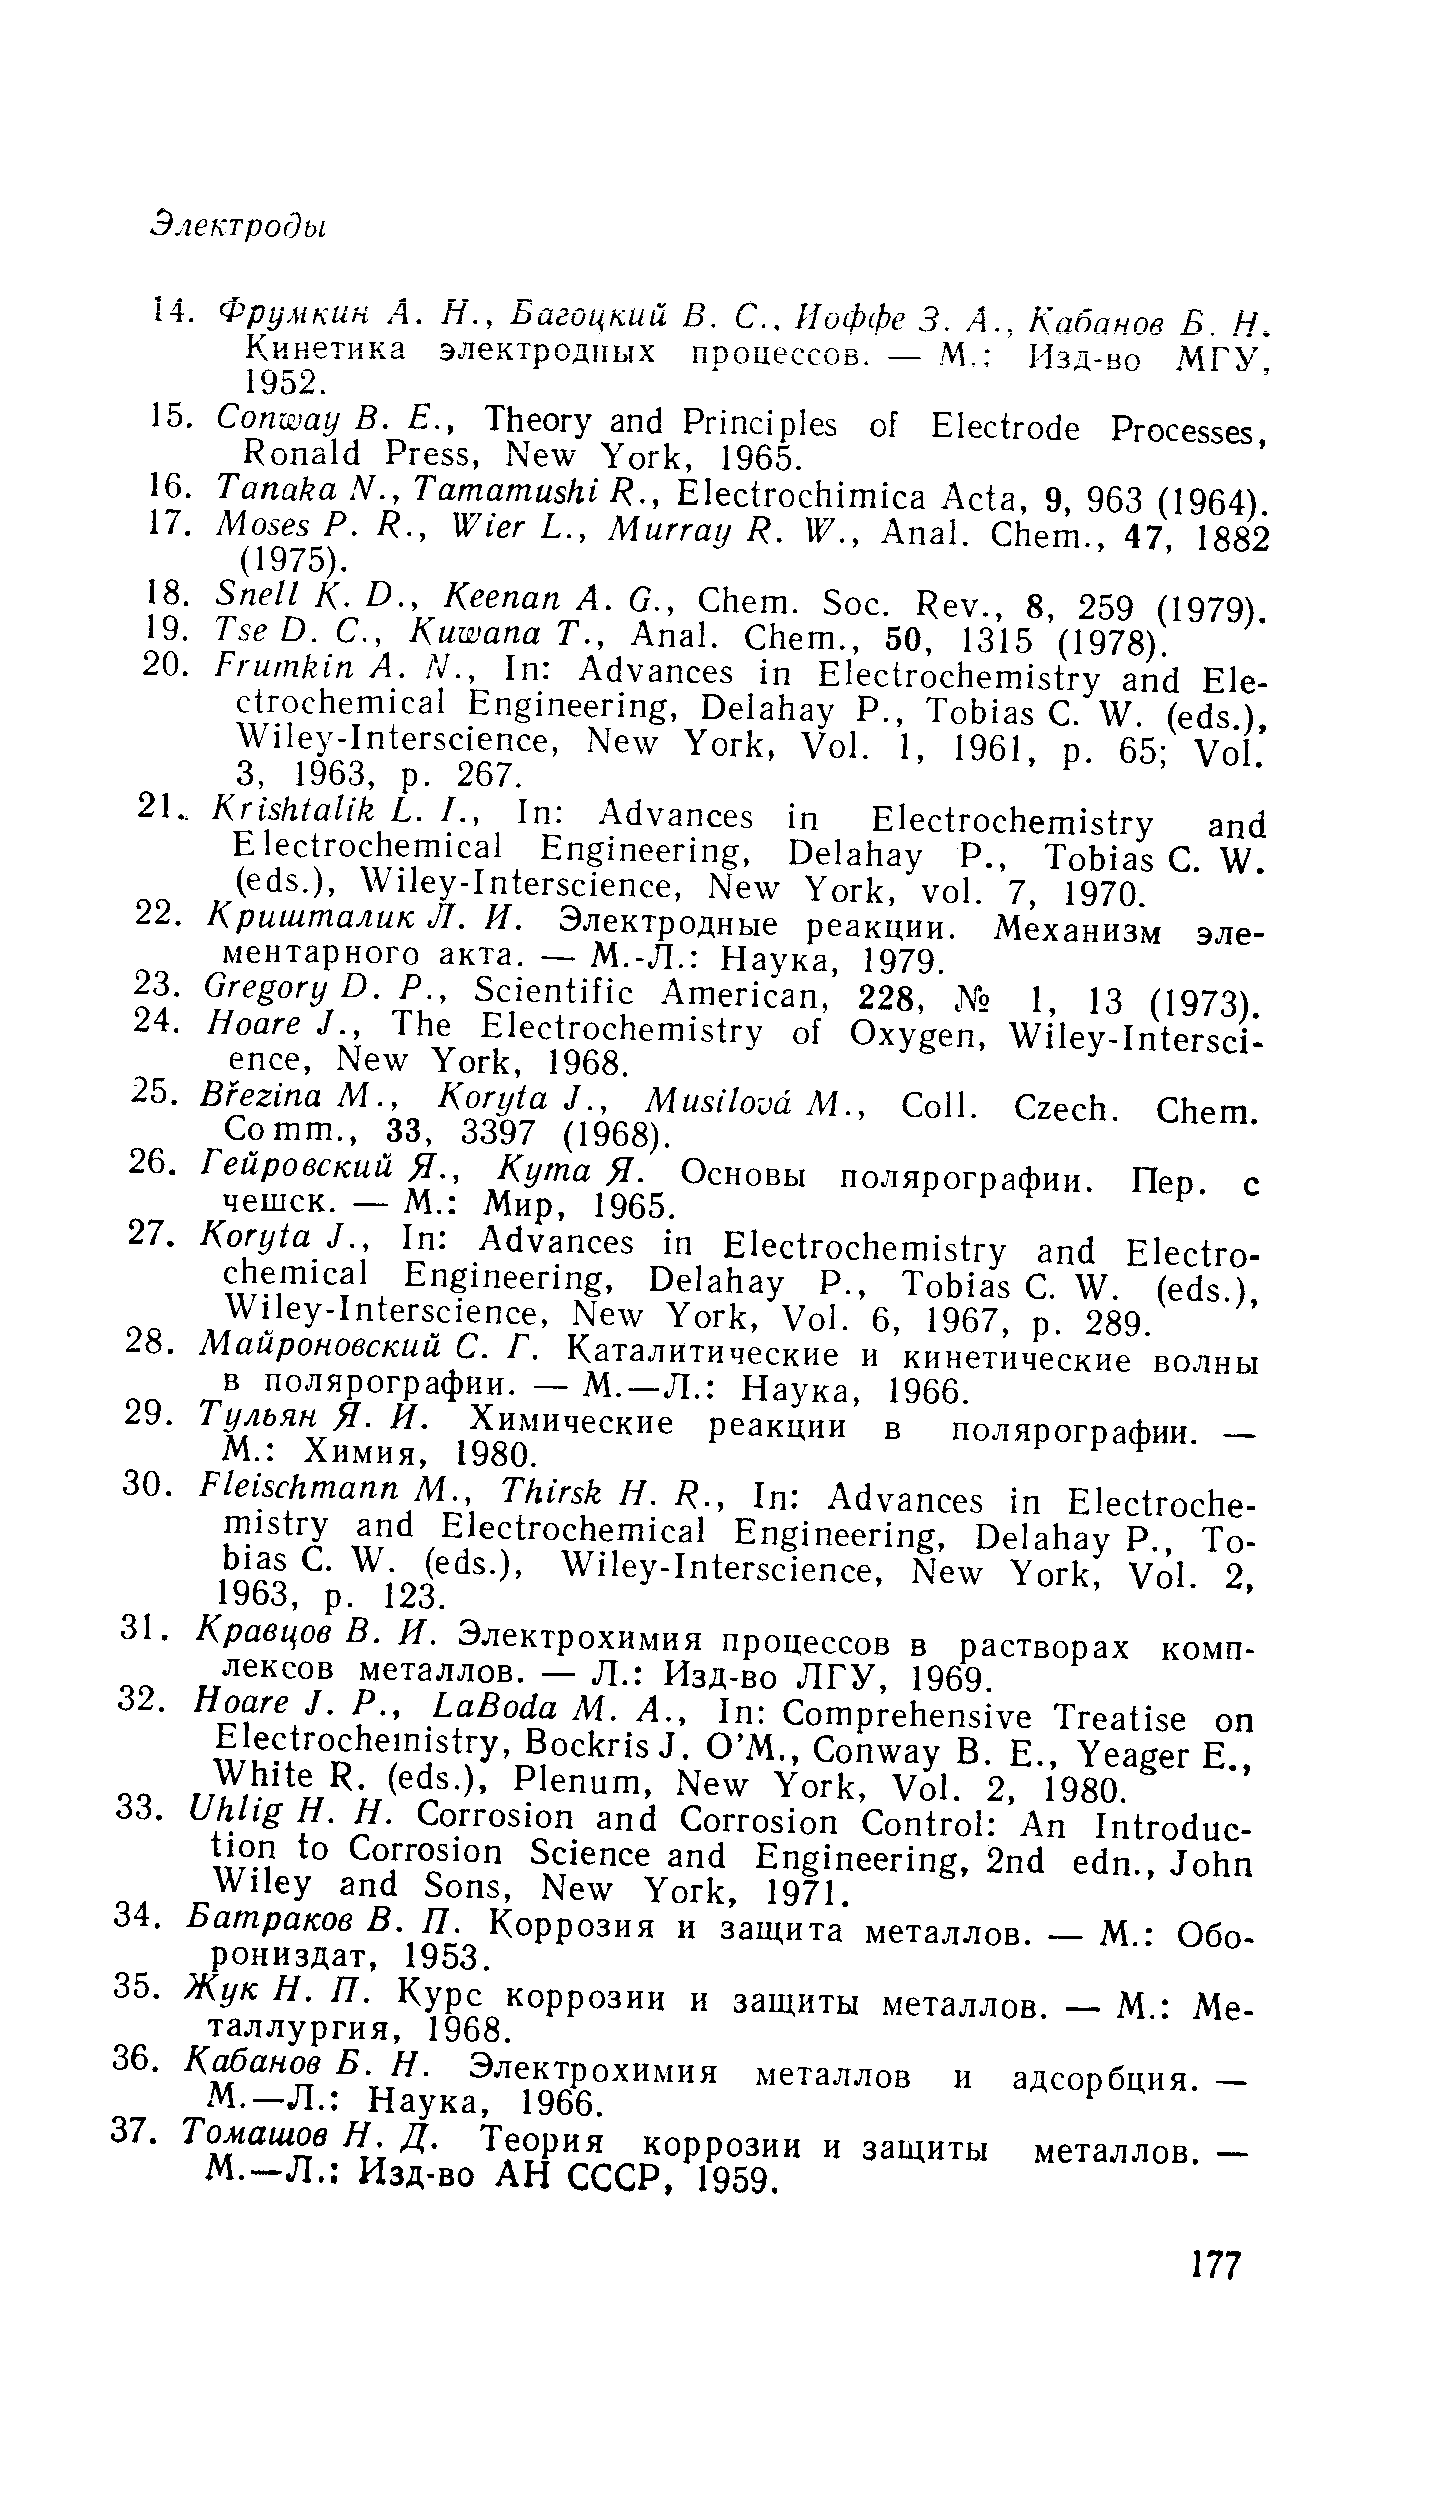 Кинетика электродных процессов. — М. Изд-во МГУ, 1952.